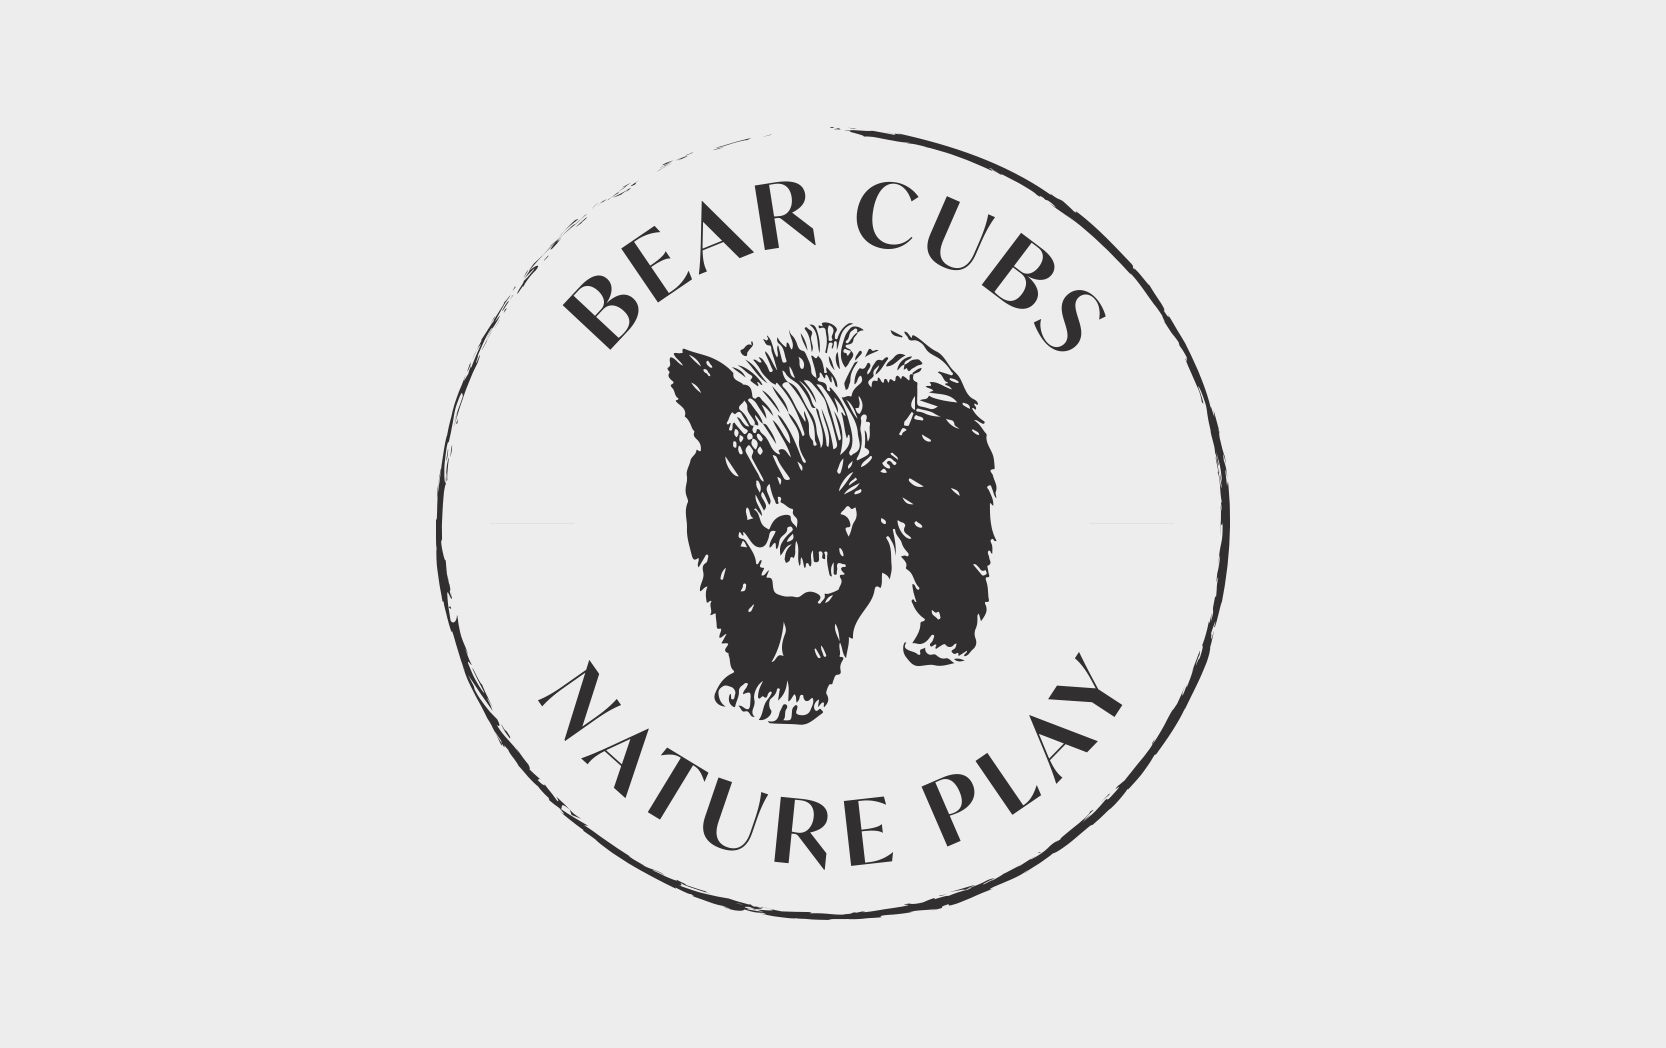 Bear Cubs Nature Play